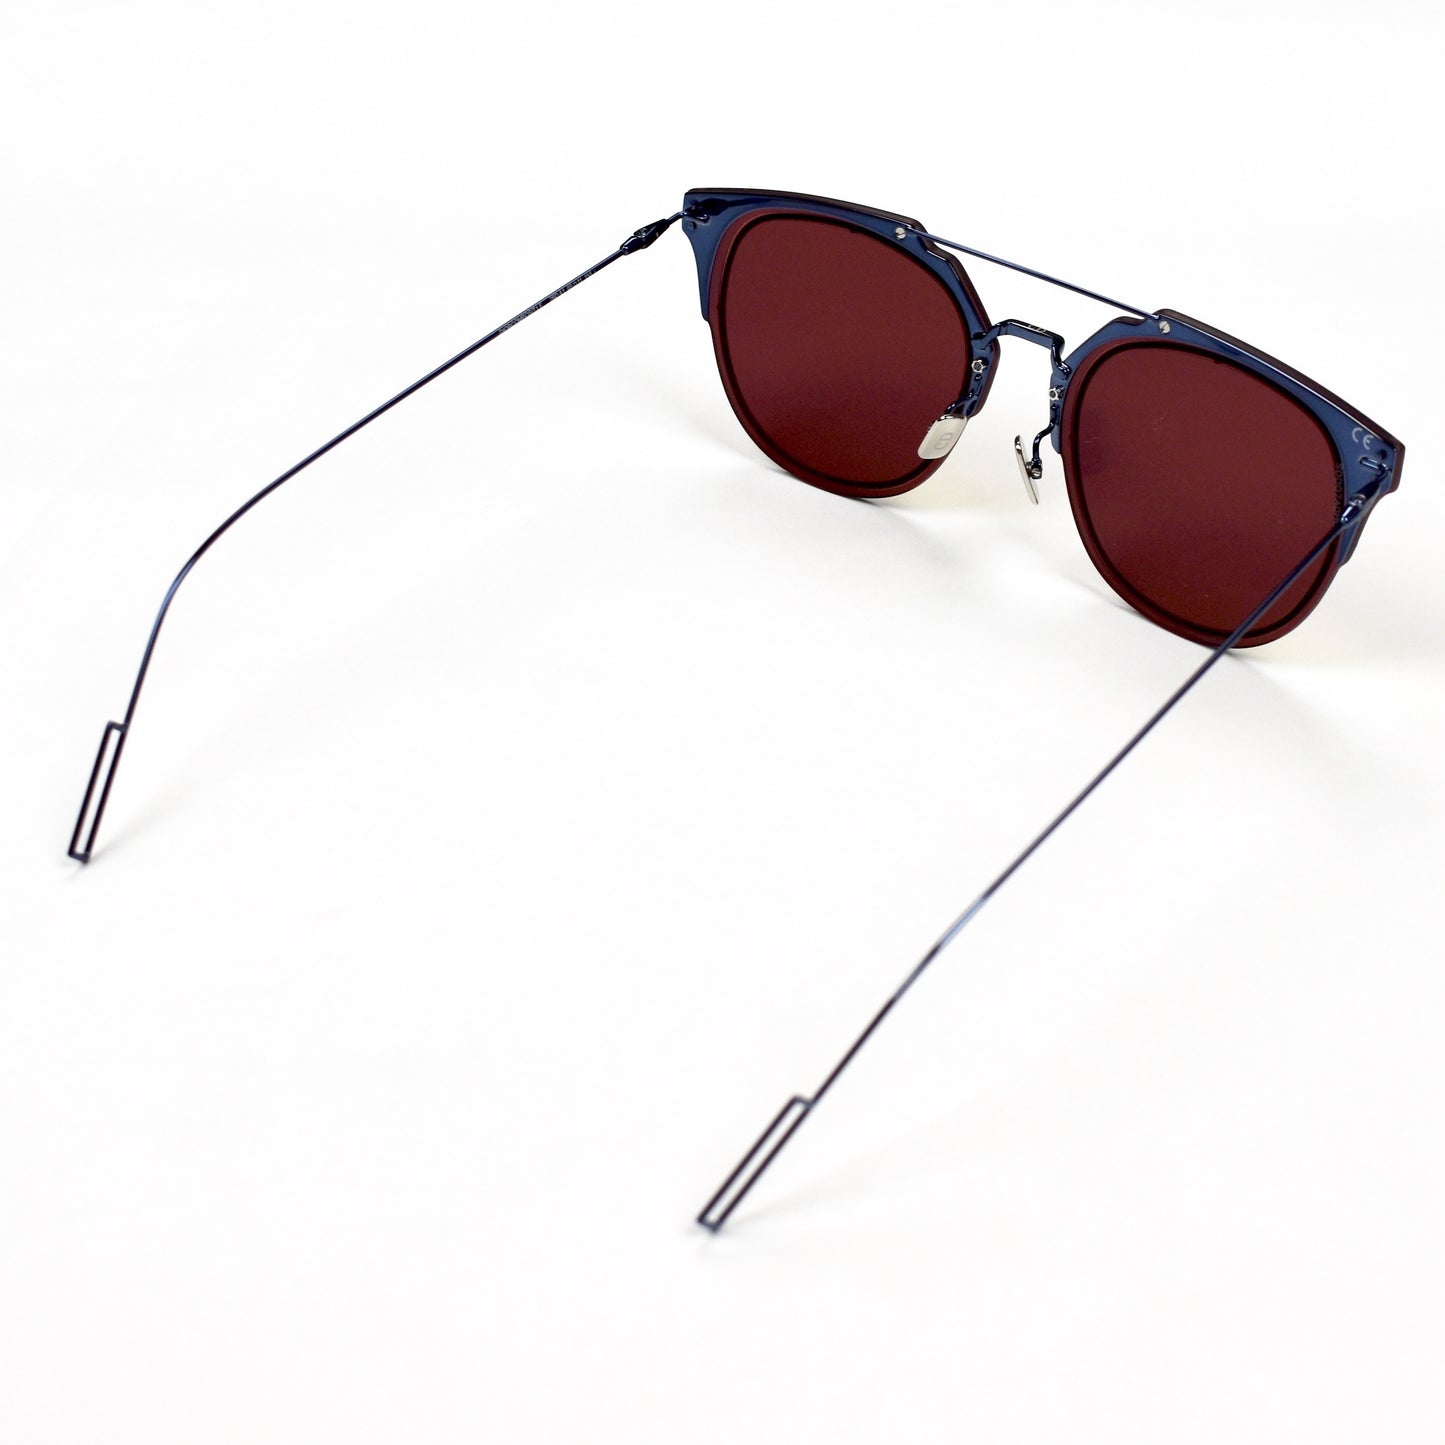 Dior - Composit 1.0 Sunglasses (Navy/Orange)